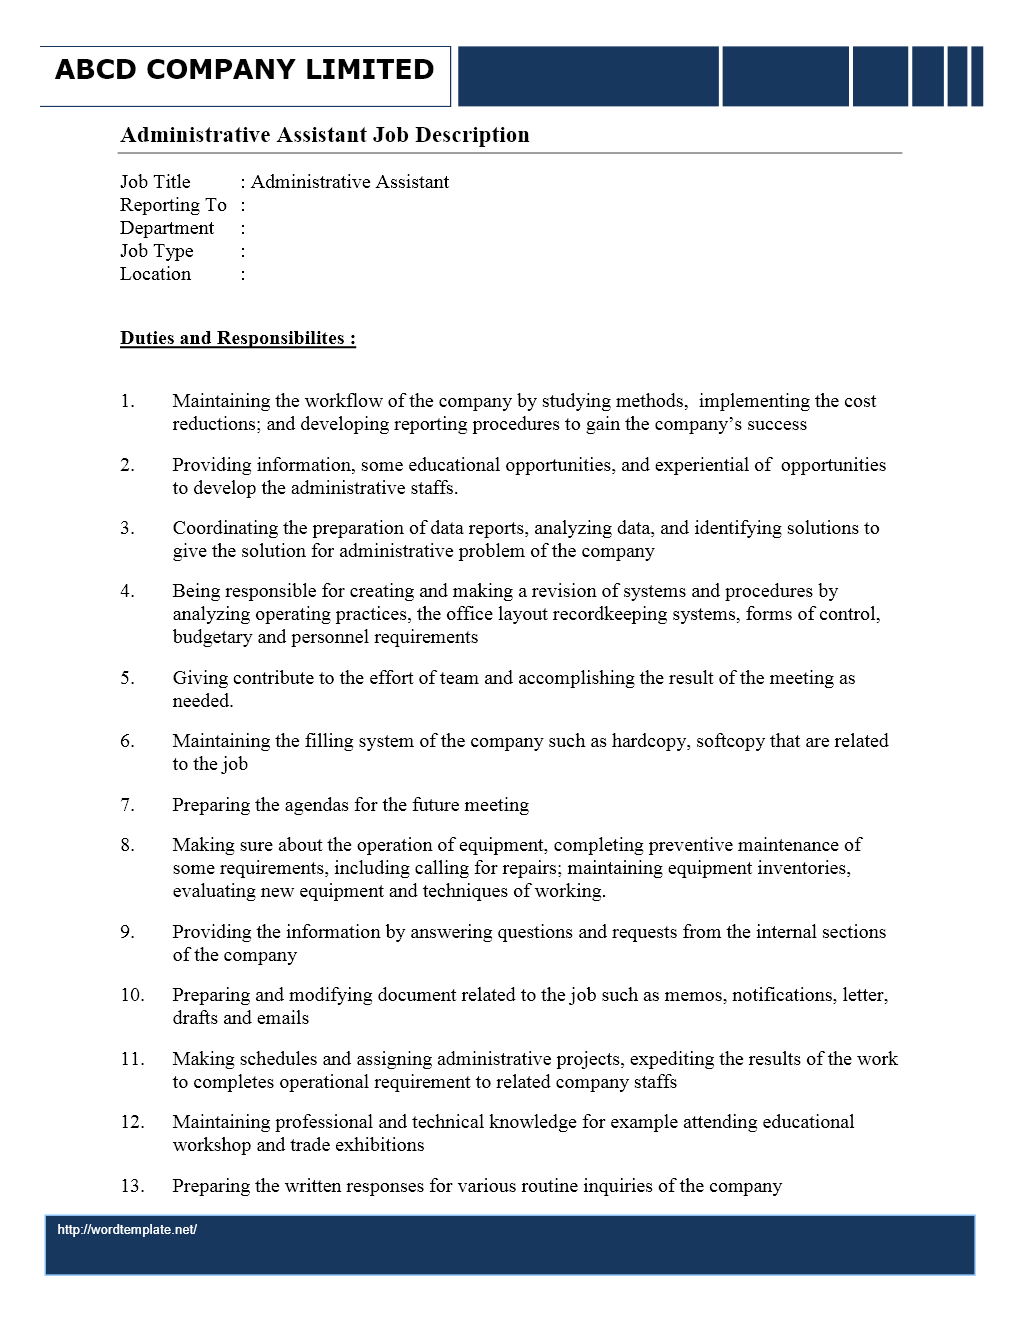 Job Description - Administrative Assistant